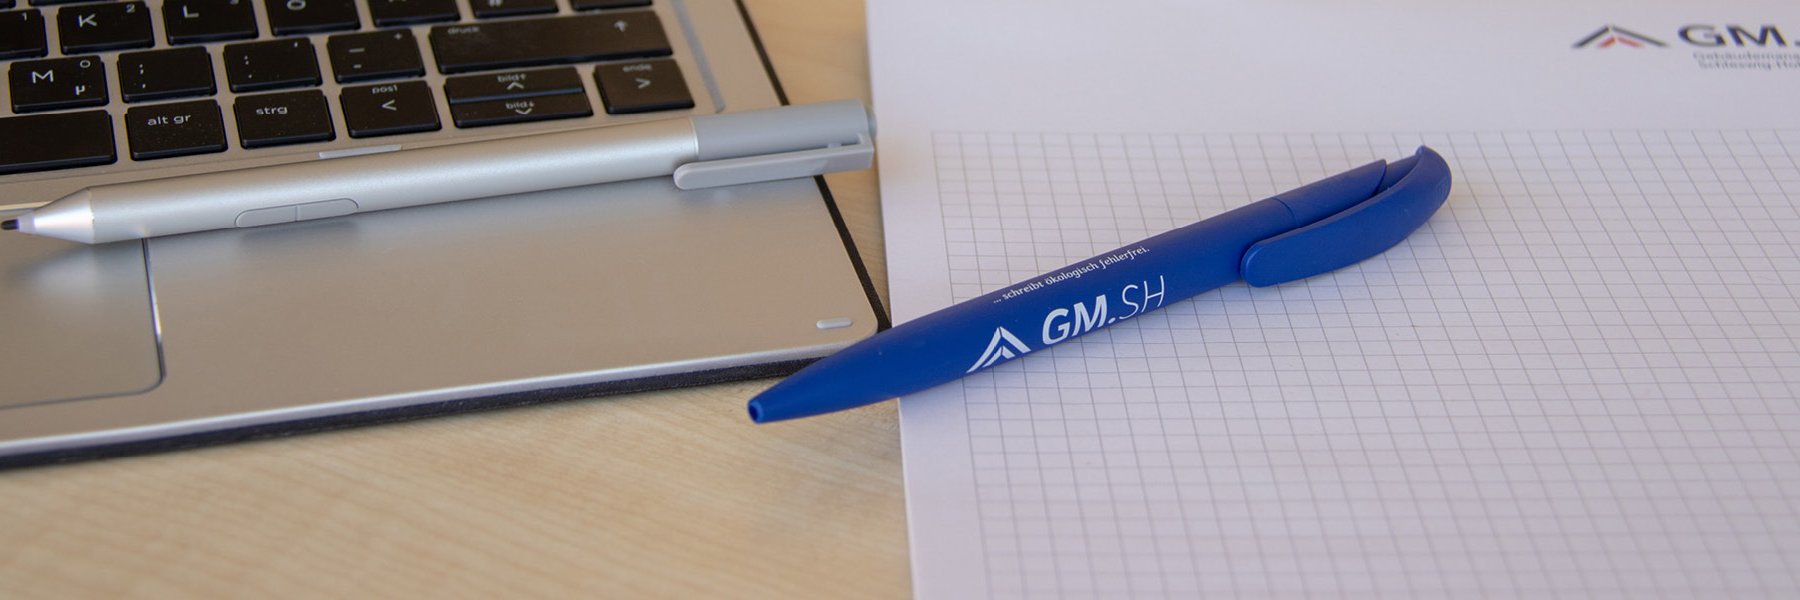 Kugelschreiber, Laptop und GMSH-Schreibblock.